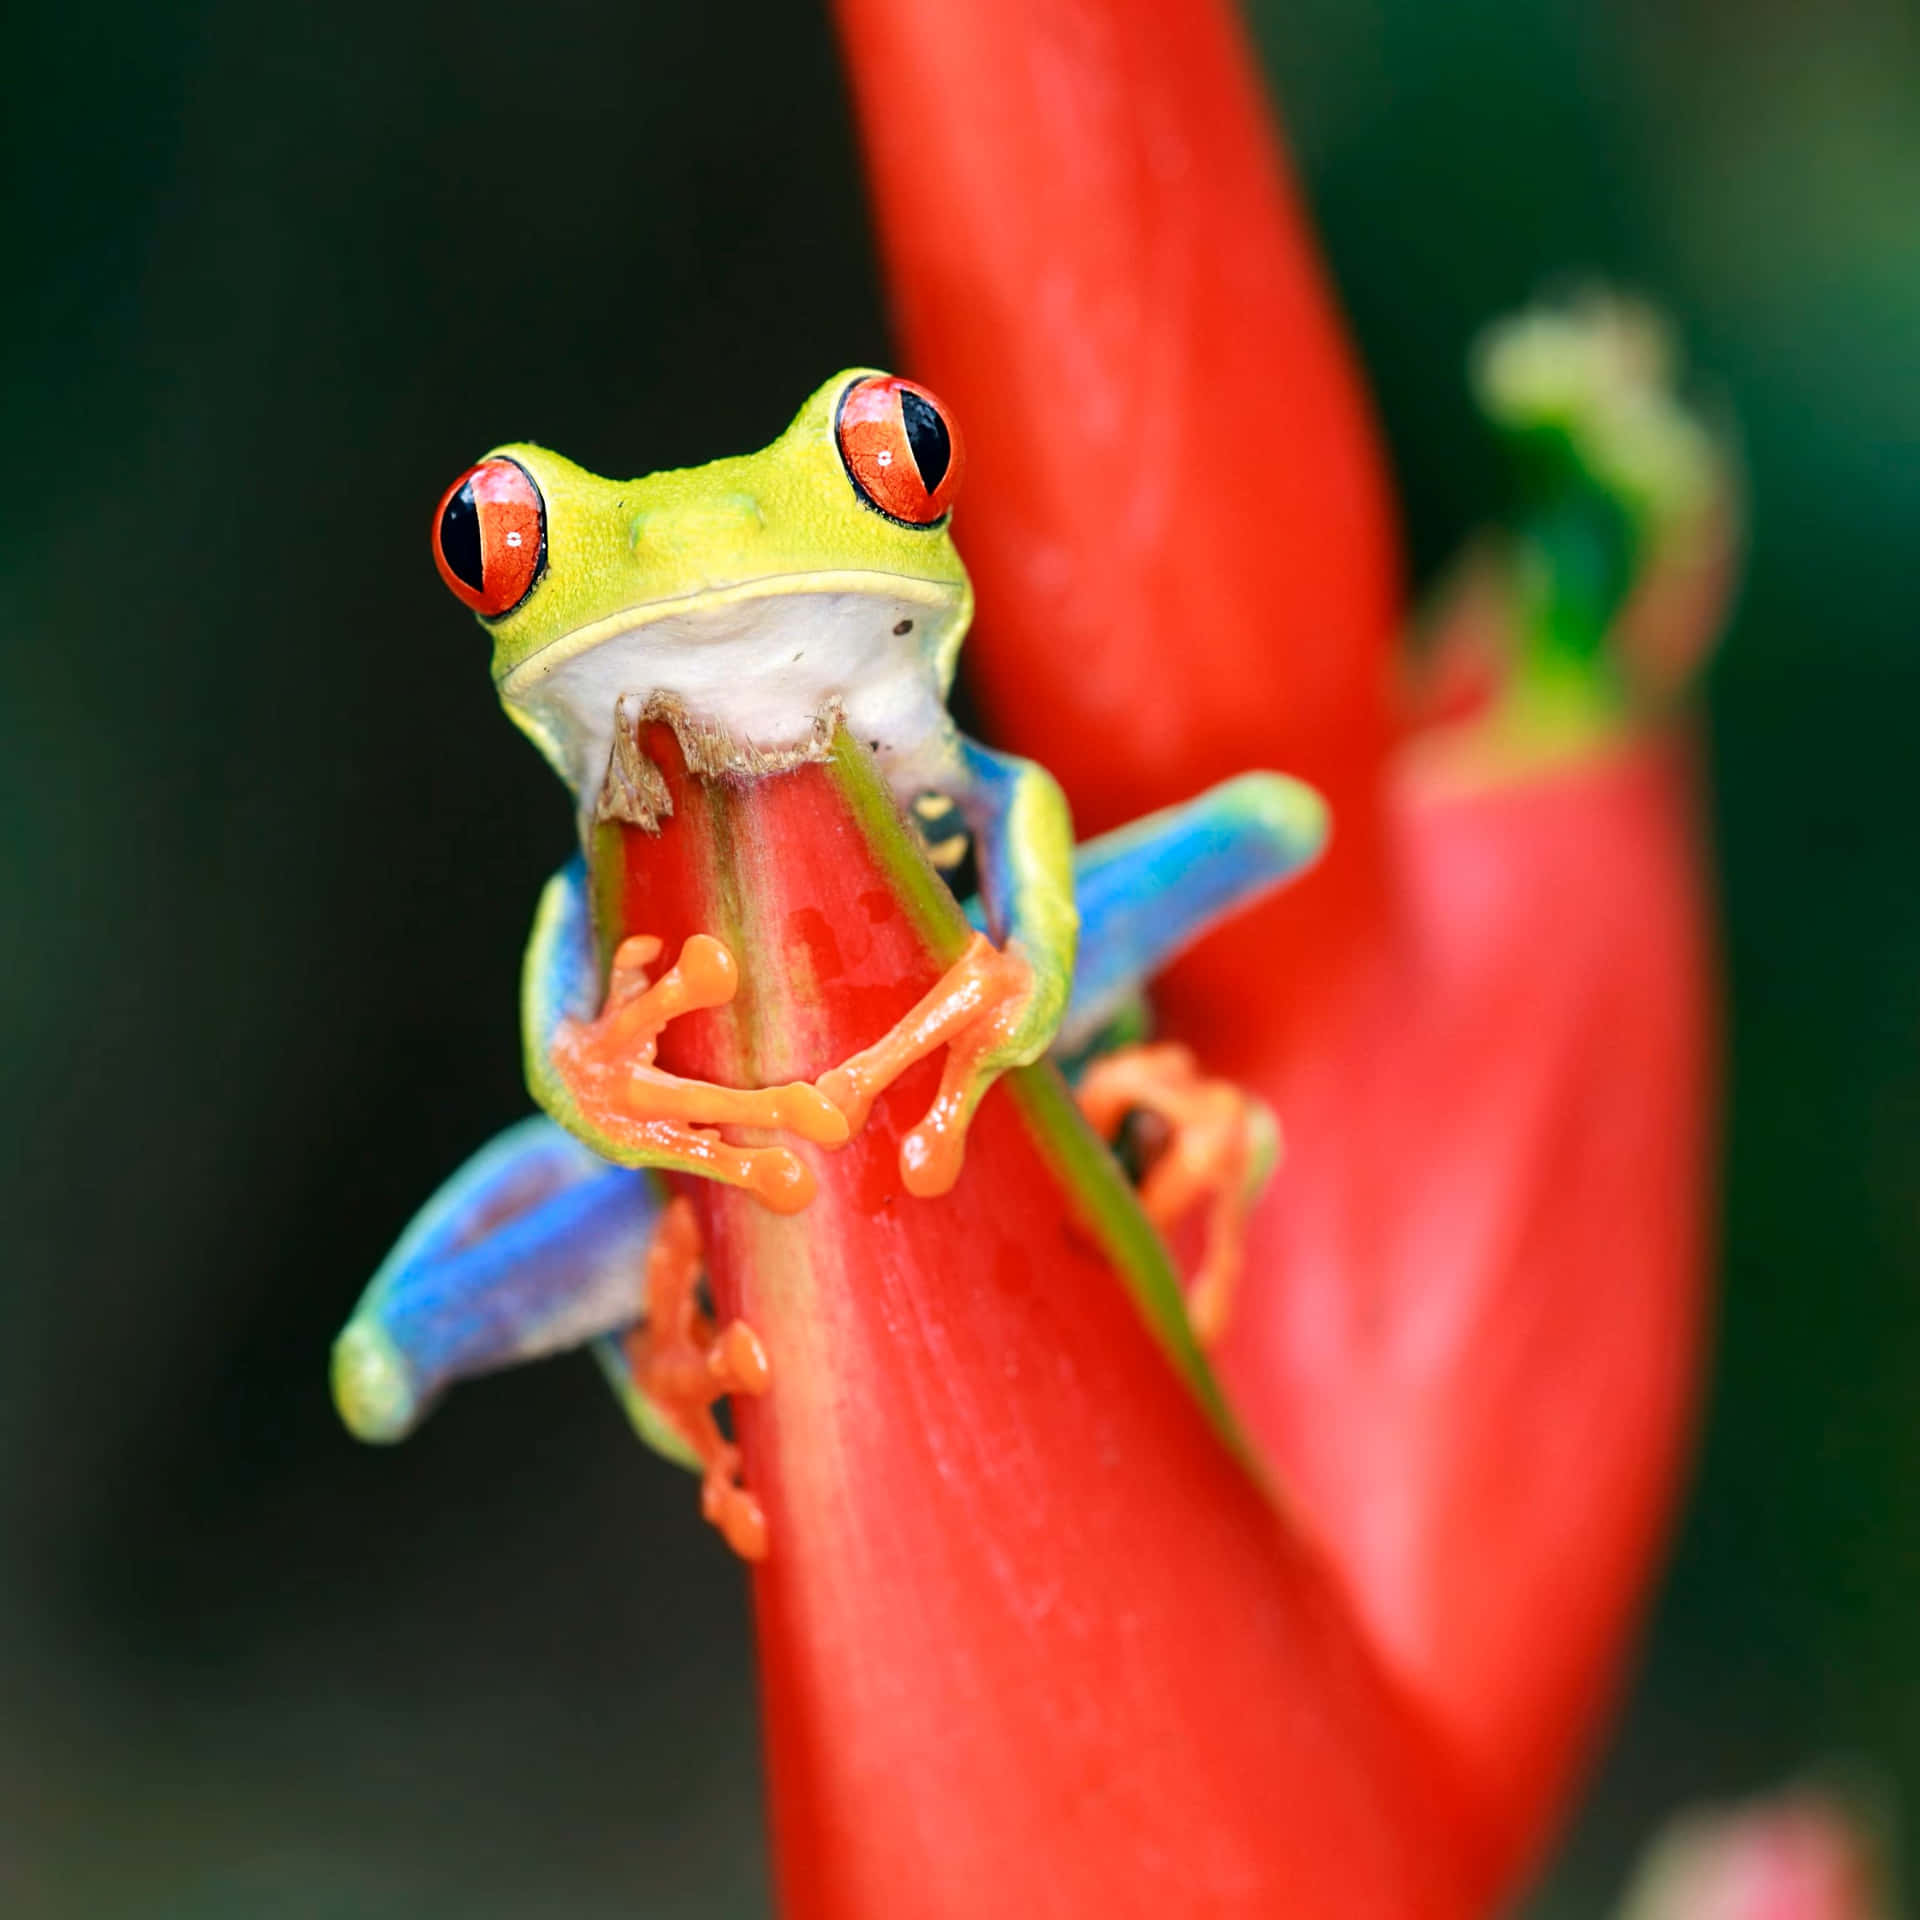 Red Eyed Tree Frog On Flower Stem Wallpaper